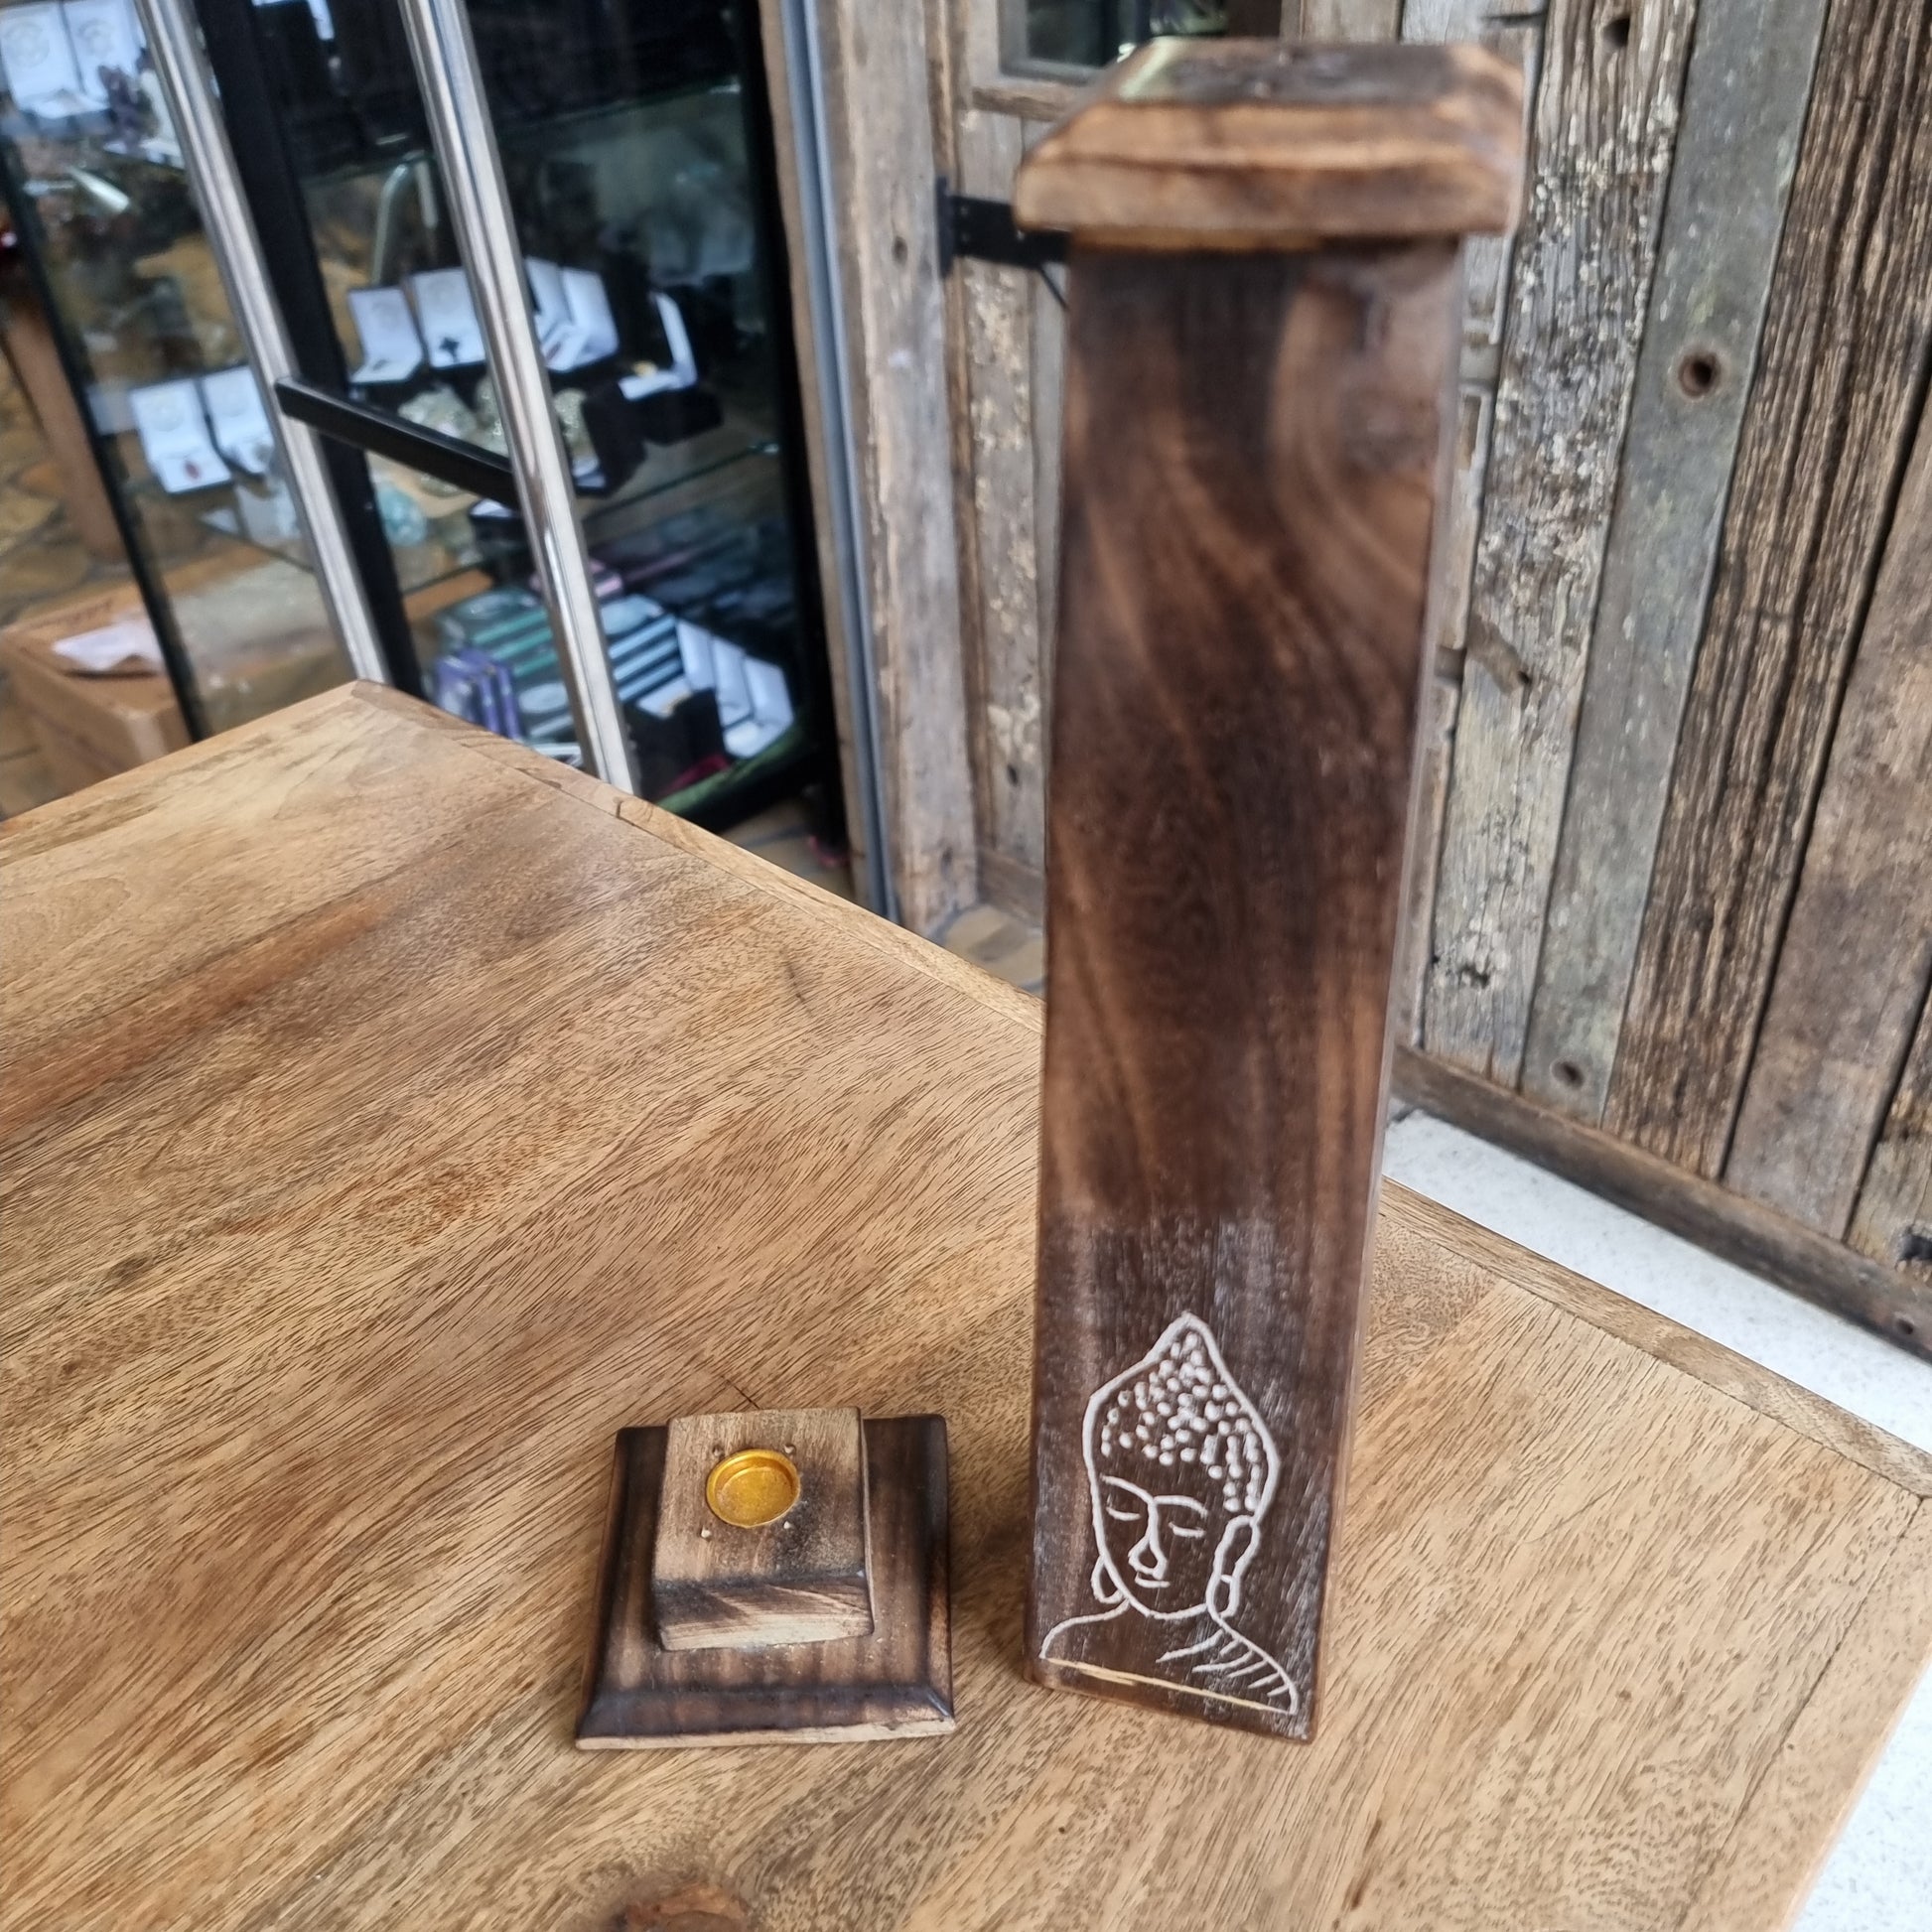 Tower incense holder - Rivendell Shop